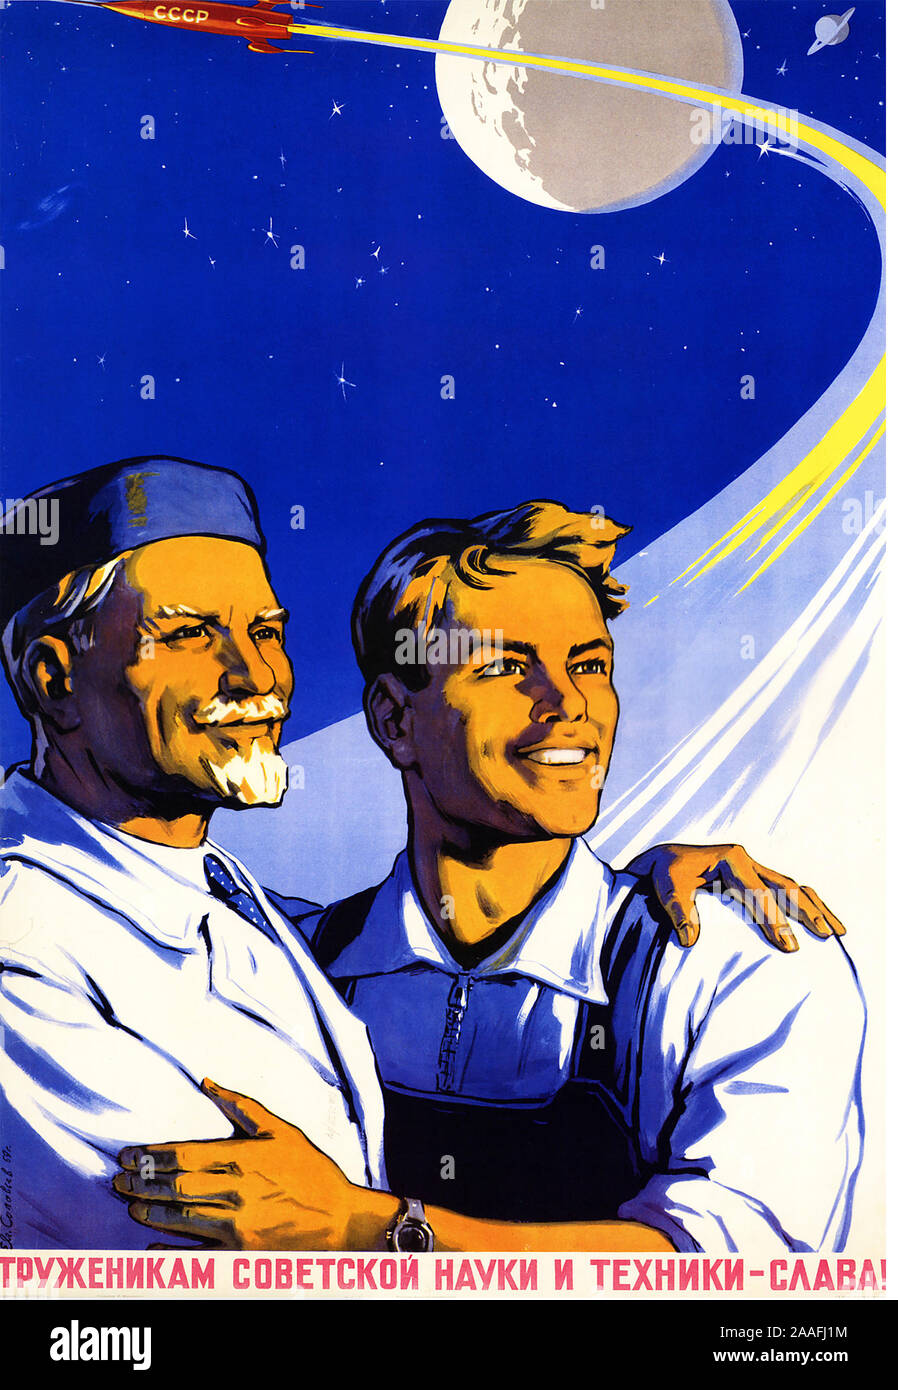 Pour LES TRAVAILLEURS DE LA SCIENCE ET DE LA TECHNOLOGIE soviétique ! Affiche soviétique vers 1968 Banque D'Images